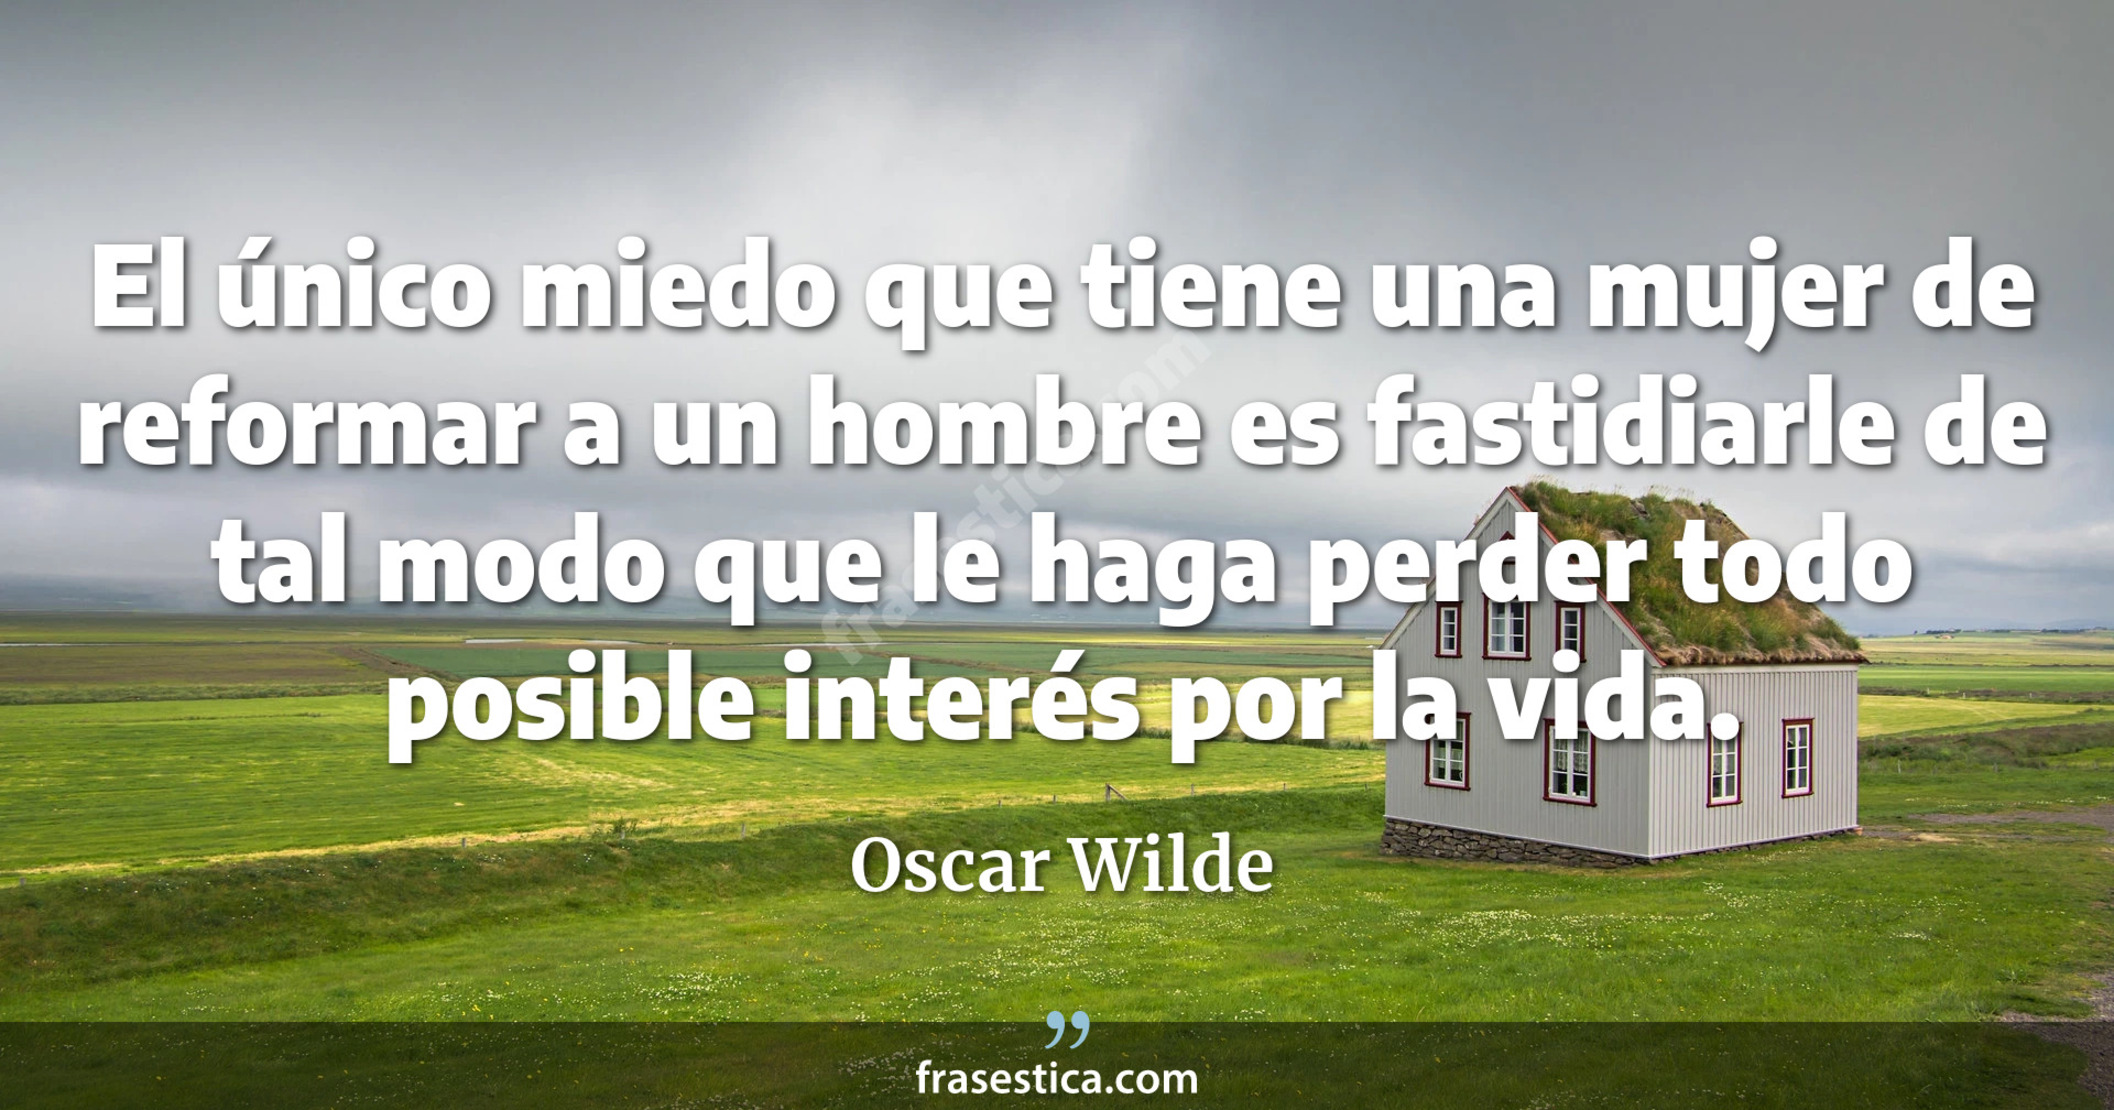 El único miedo que tiene una mujer de reformar a un hombre es fastidiarle de tal modo que le haga perder todo posible interés por la vida. - Oscar Wilde